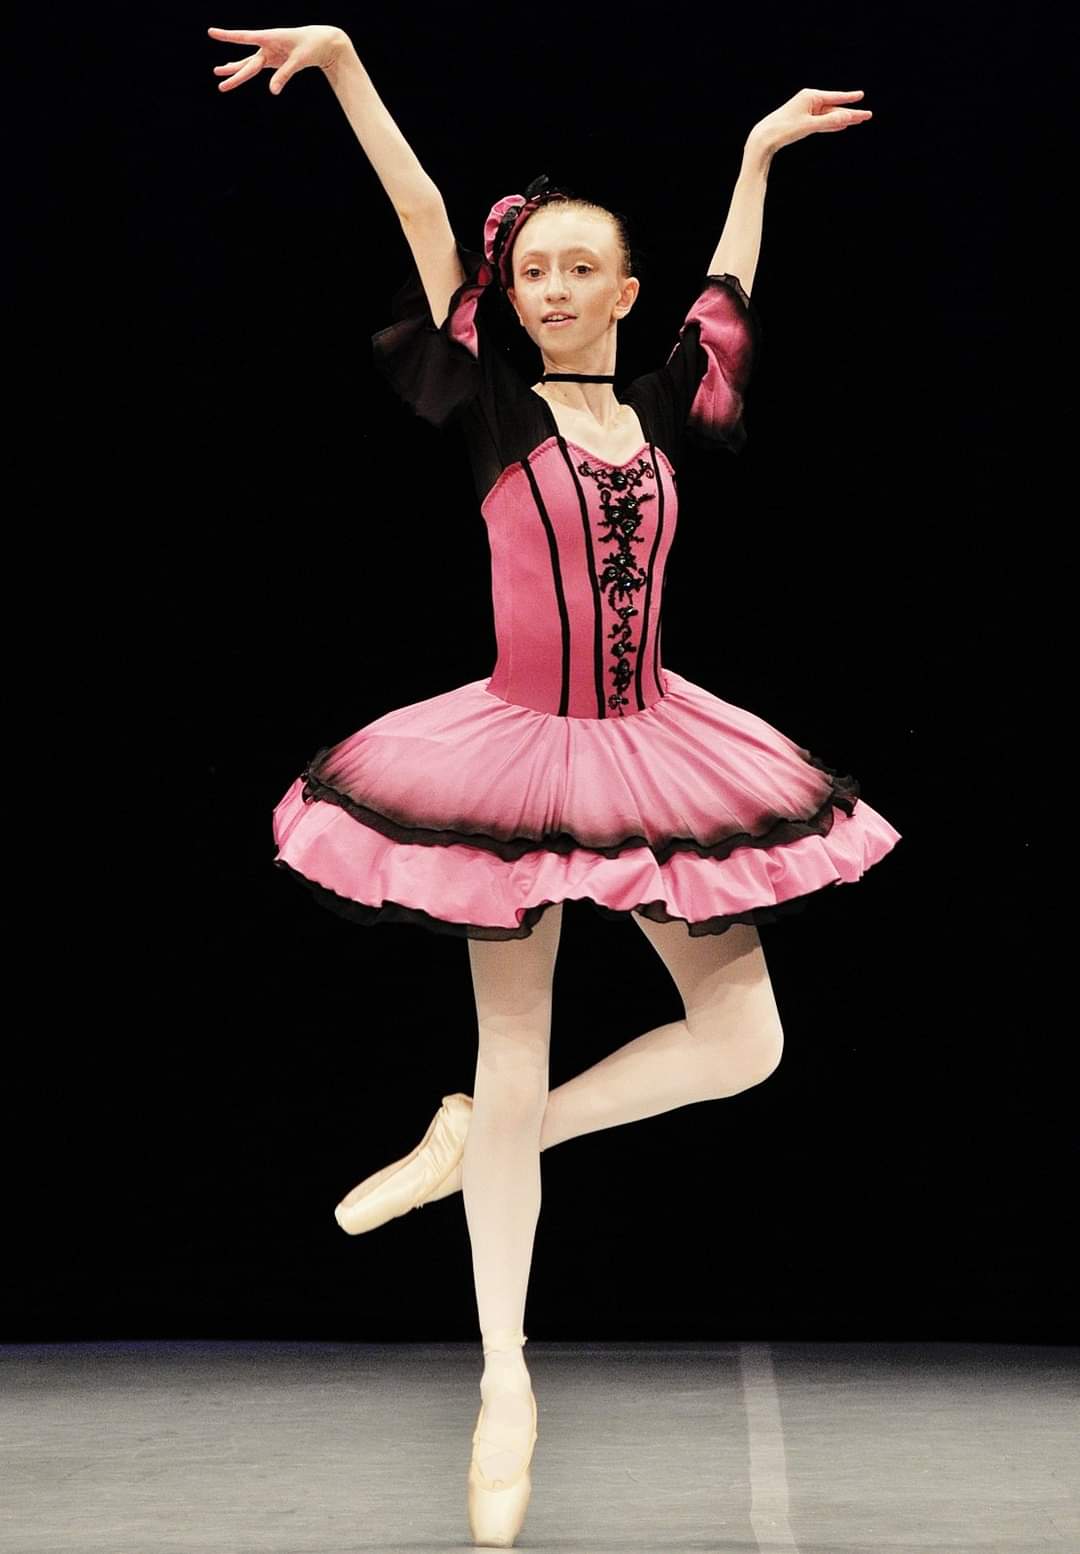 Paczka baletowa klasyczna szycie stroje baletowe tutu classical costumes ballet Harlequinade custom stage